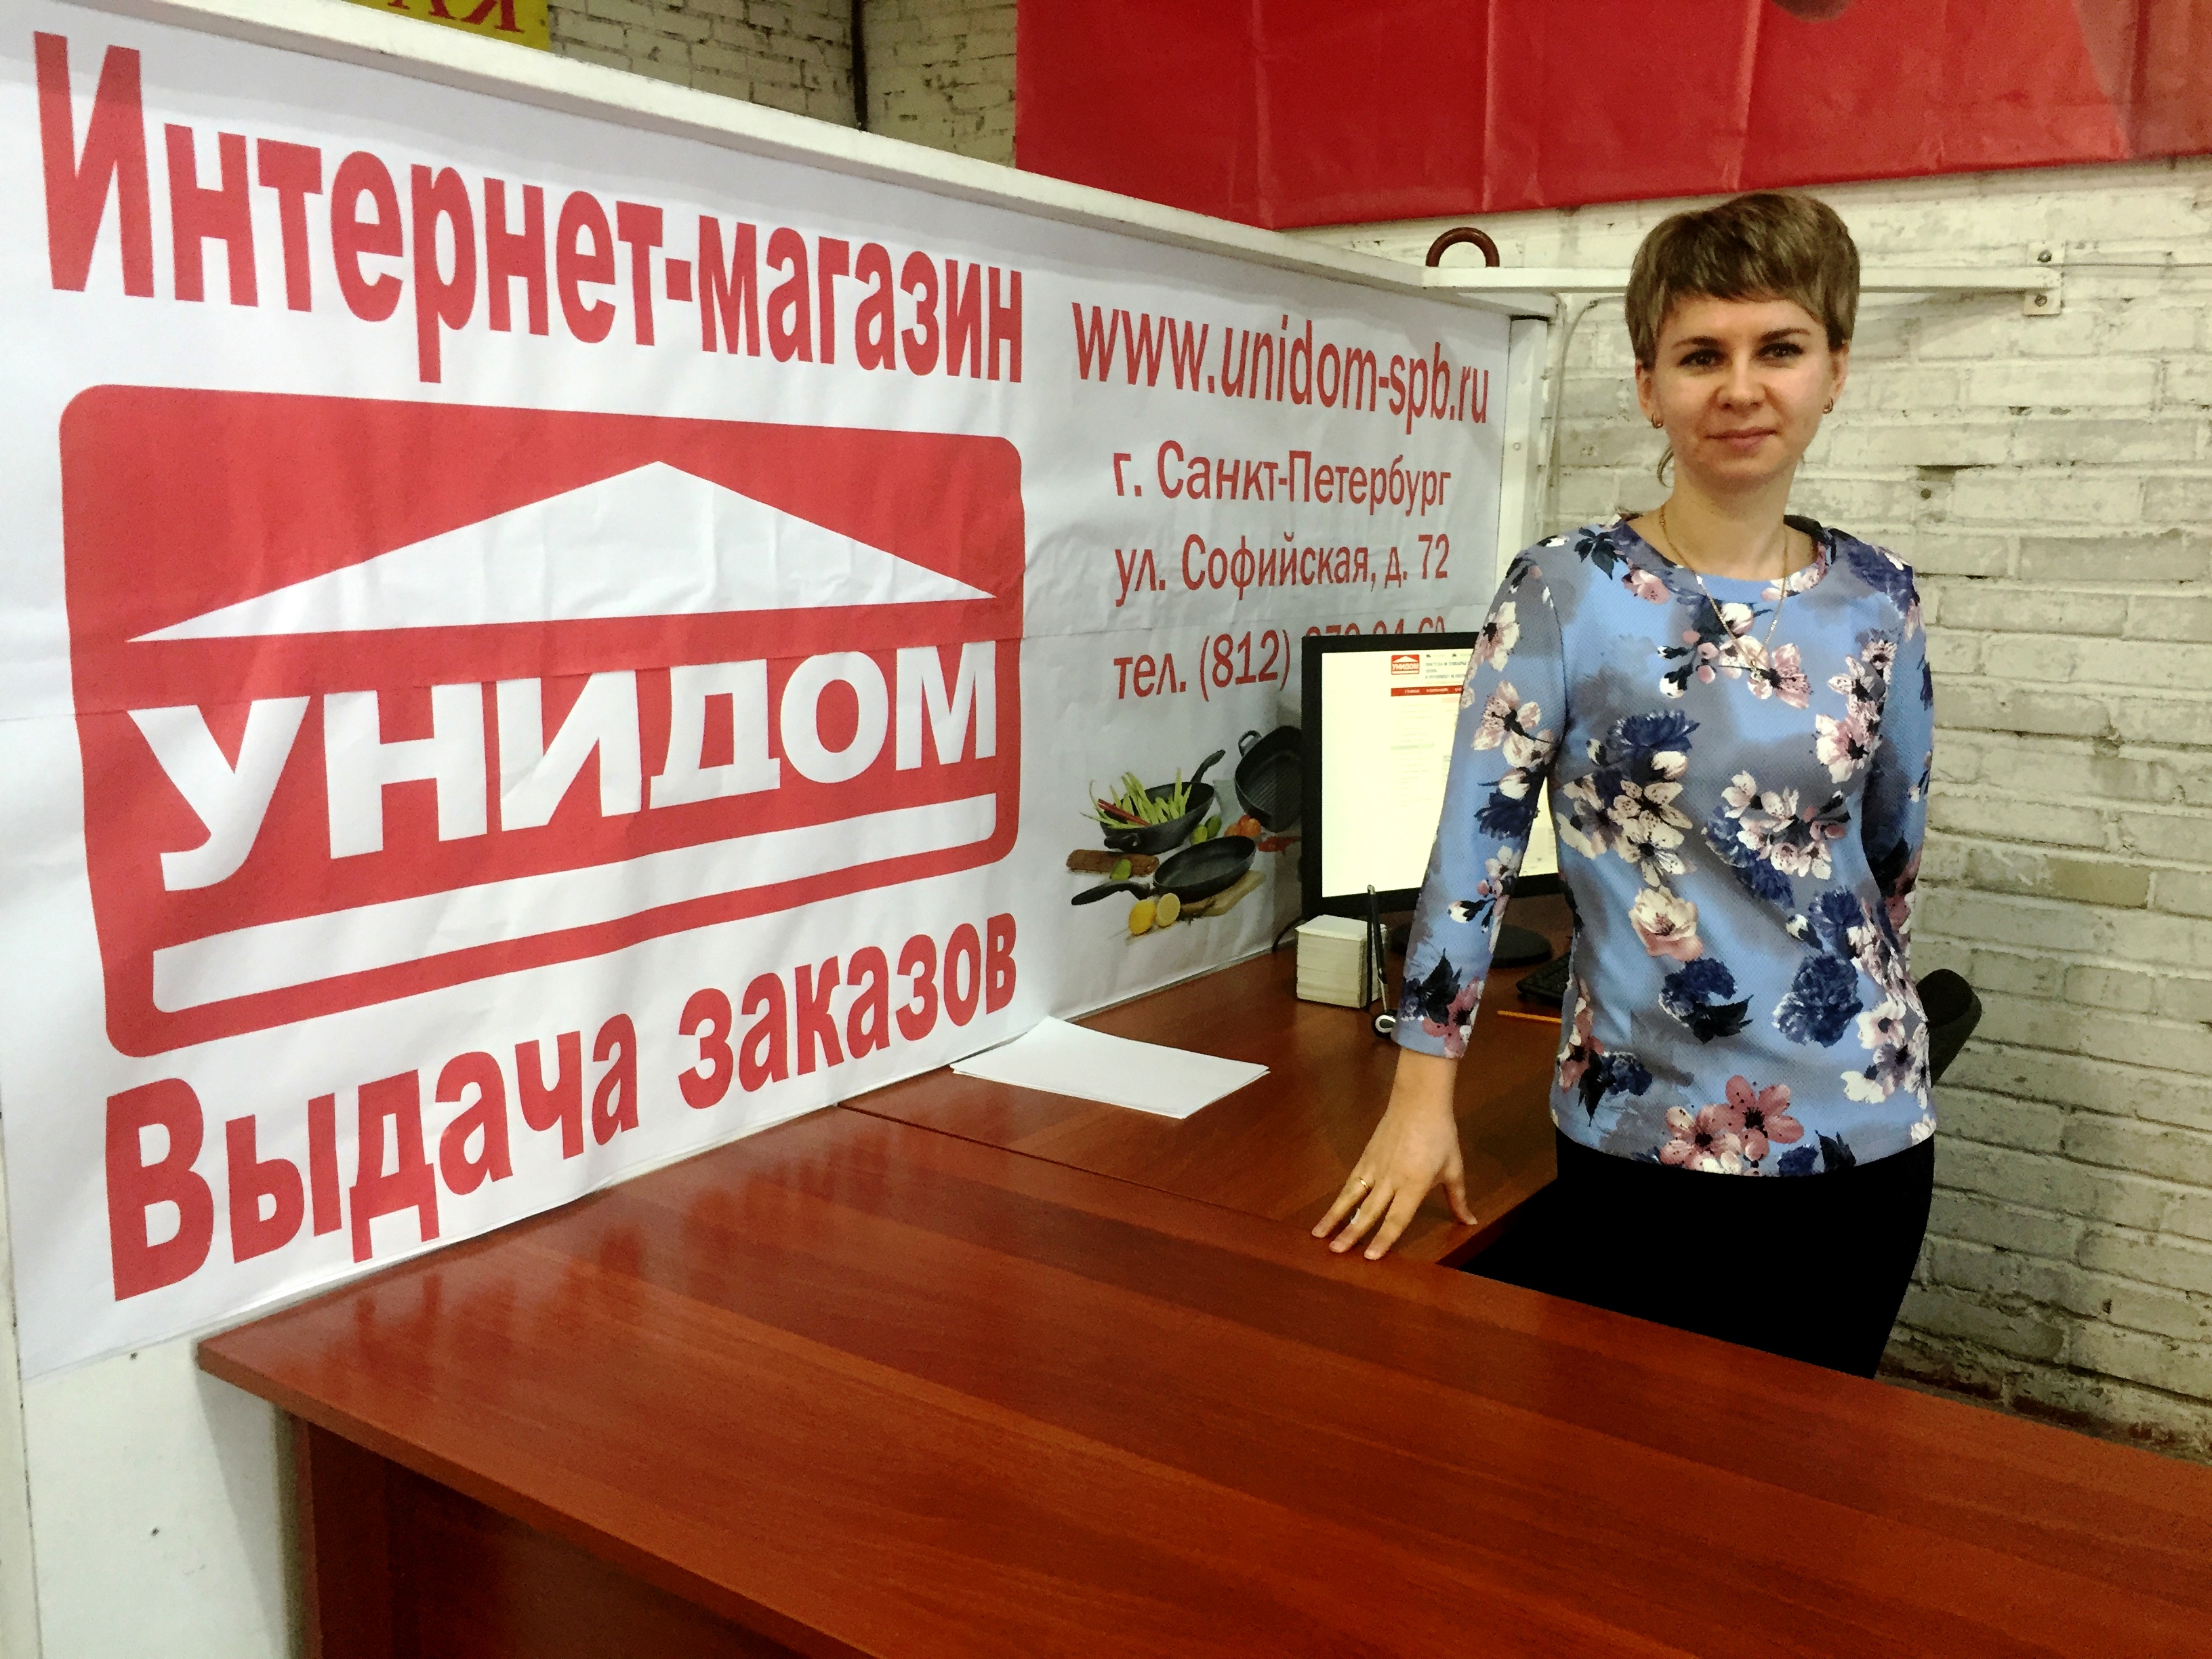 Открытие терминала для оформления заказов в интернет-магазине Унидом-СПб  